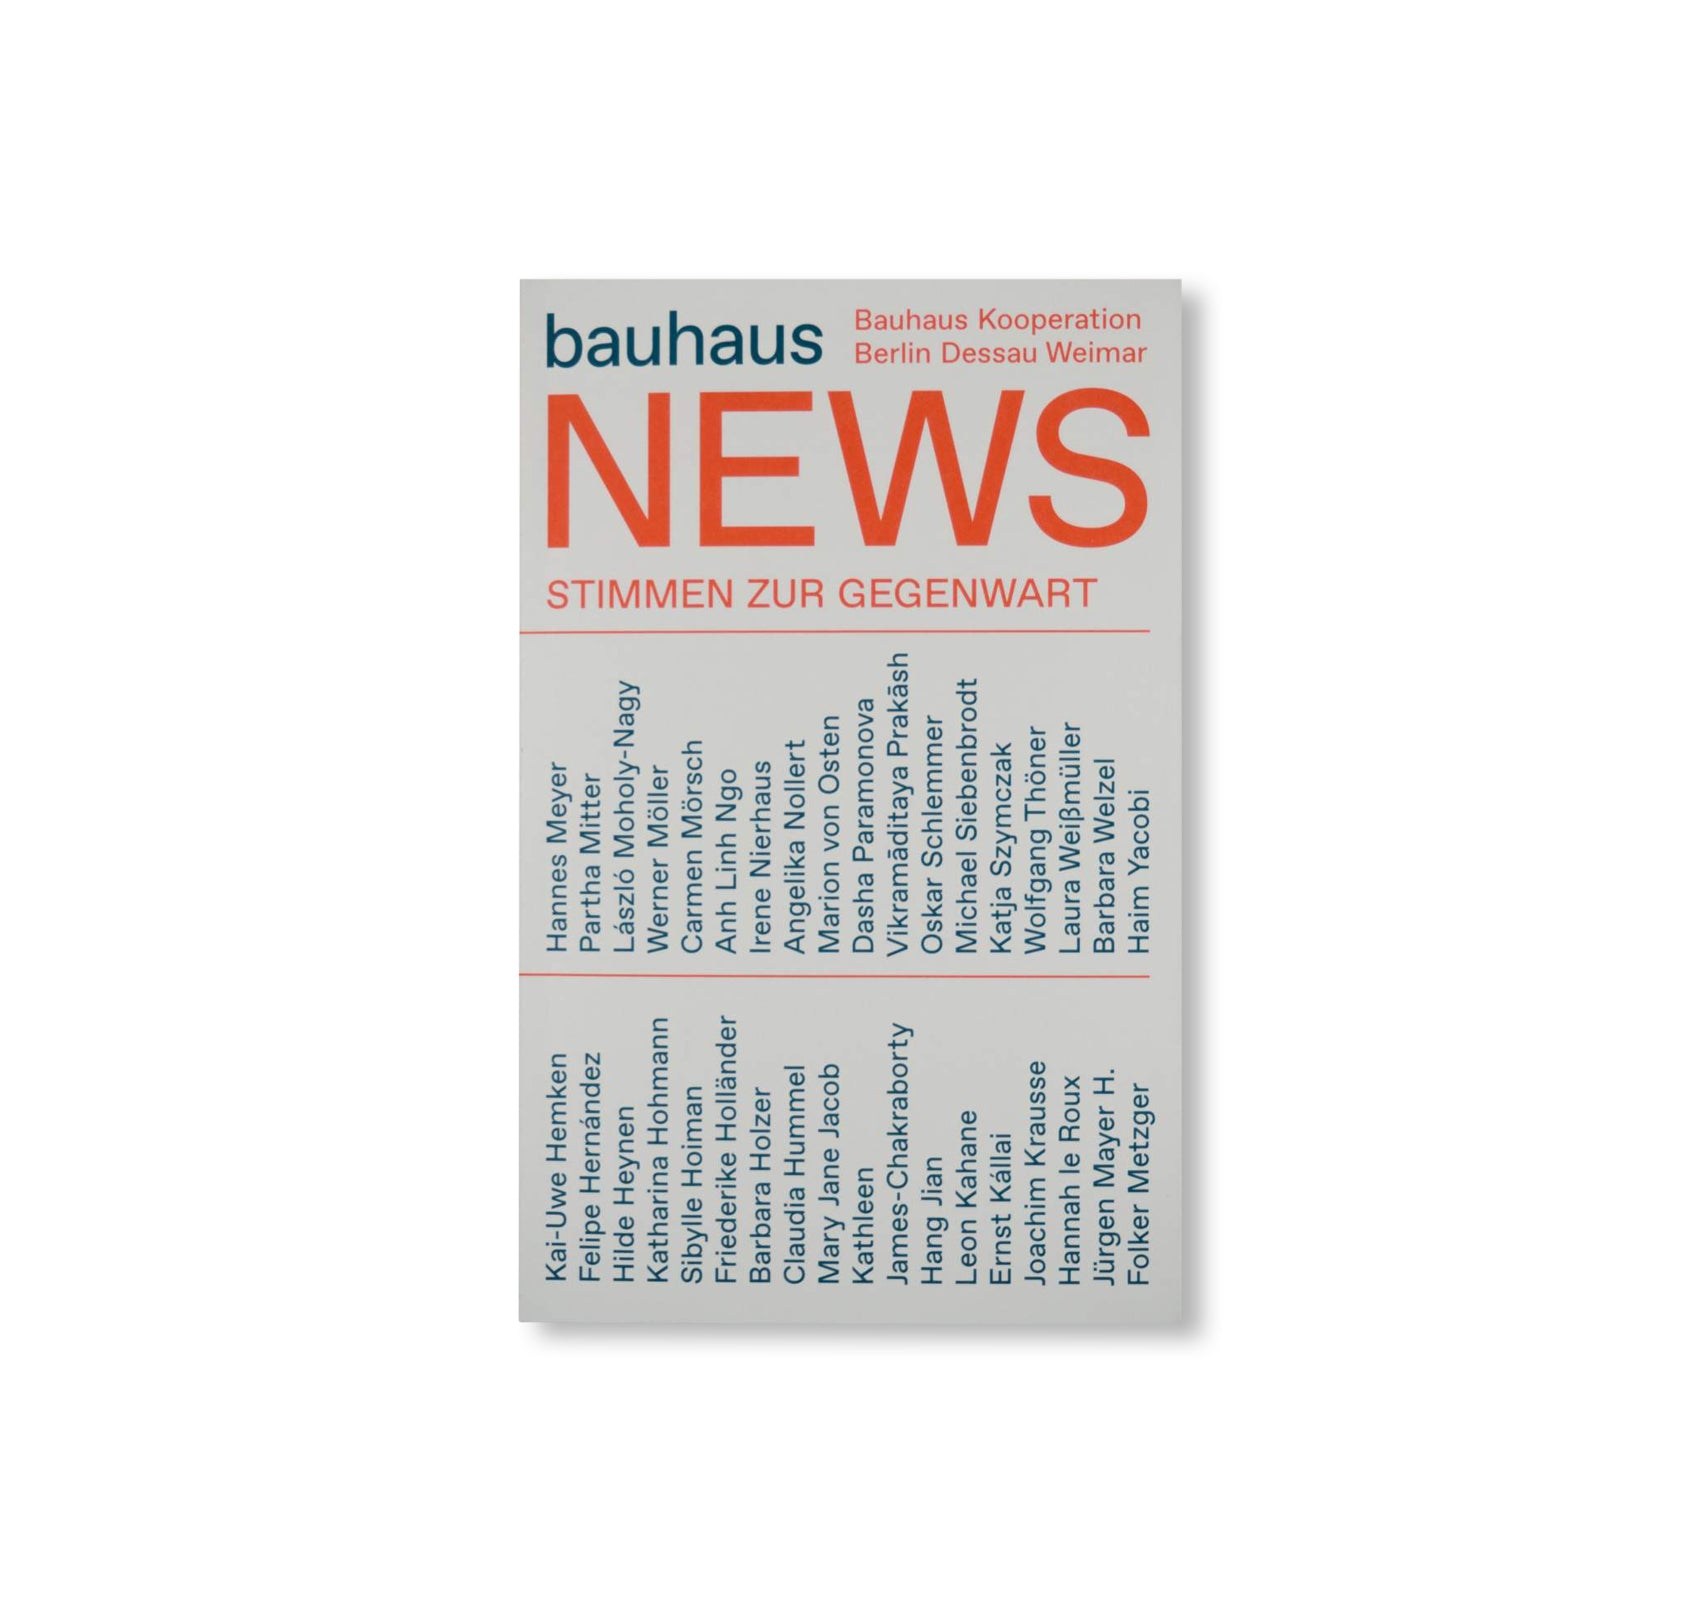 BAUHAUS NEWS - PRESENT POSITIONS